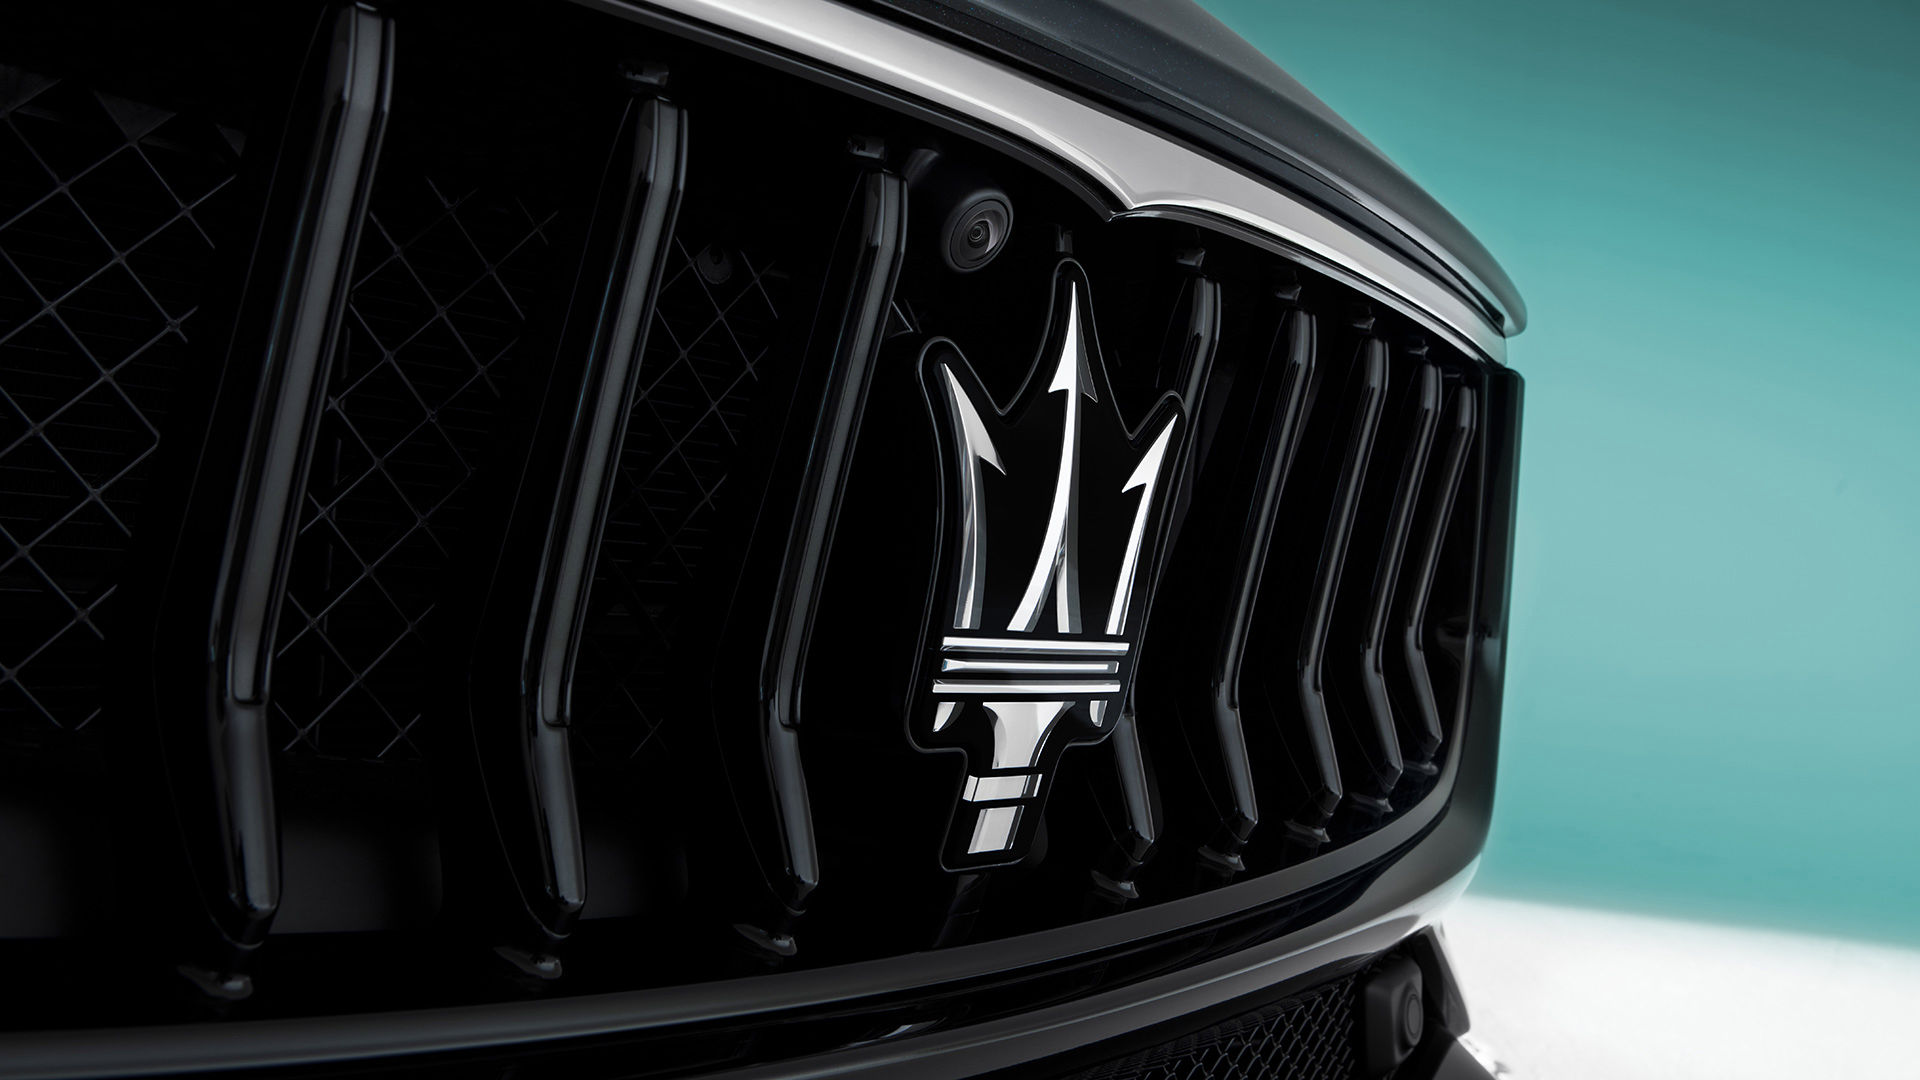 Calandre de la Maserati Ghibli noire